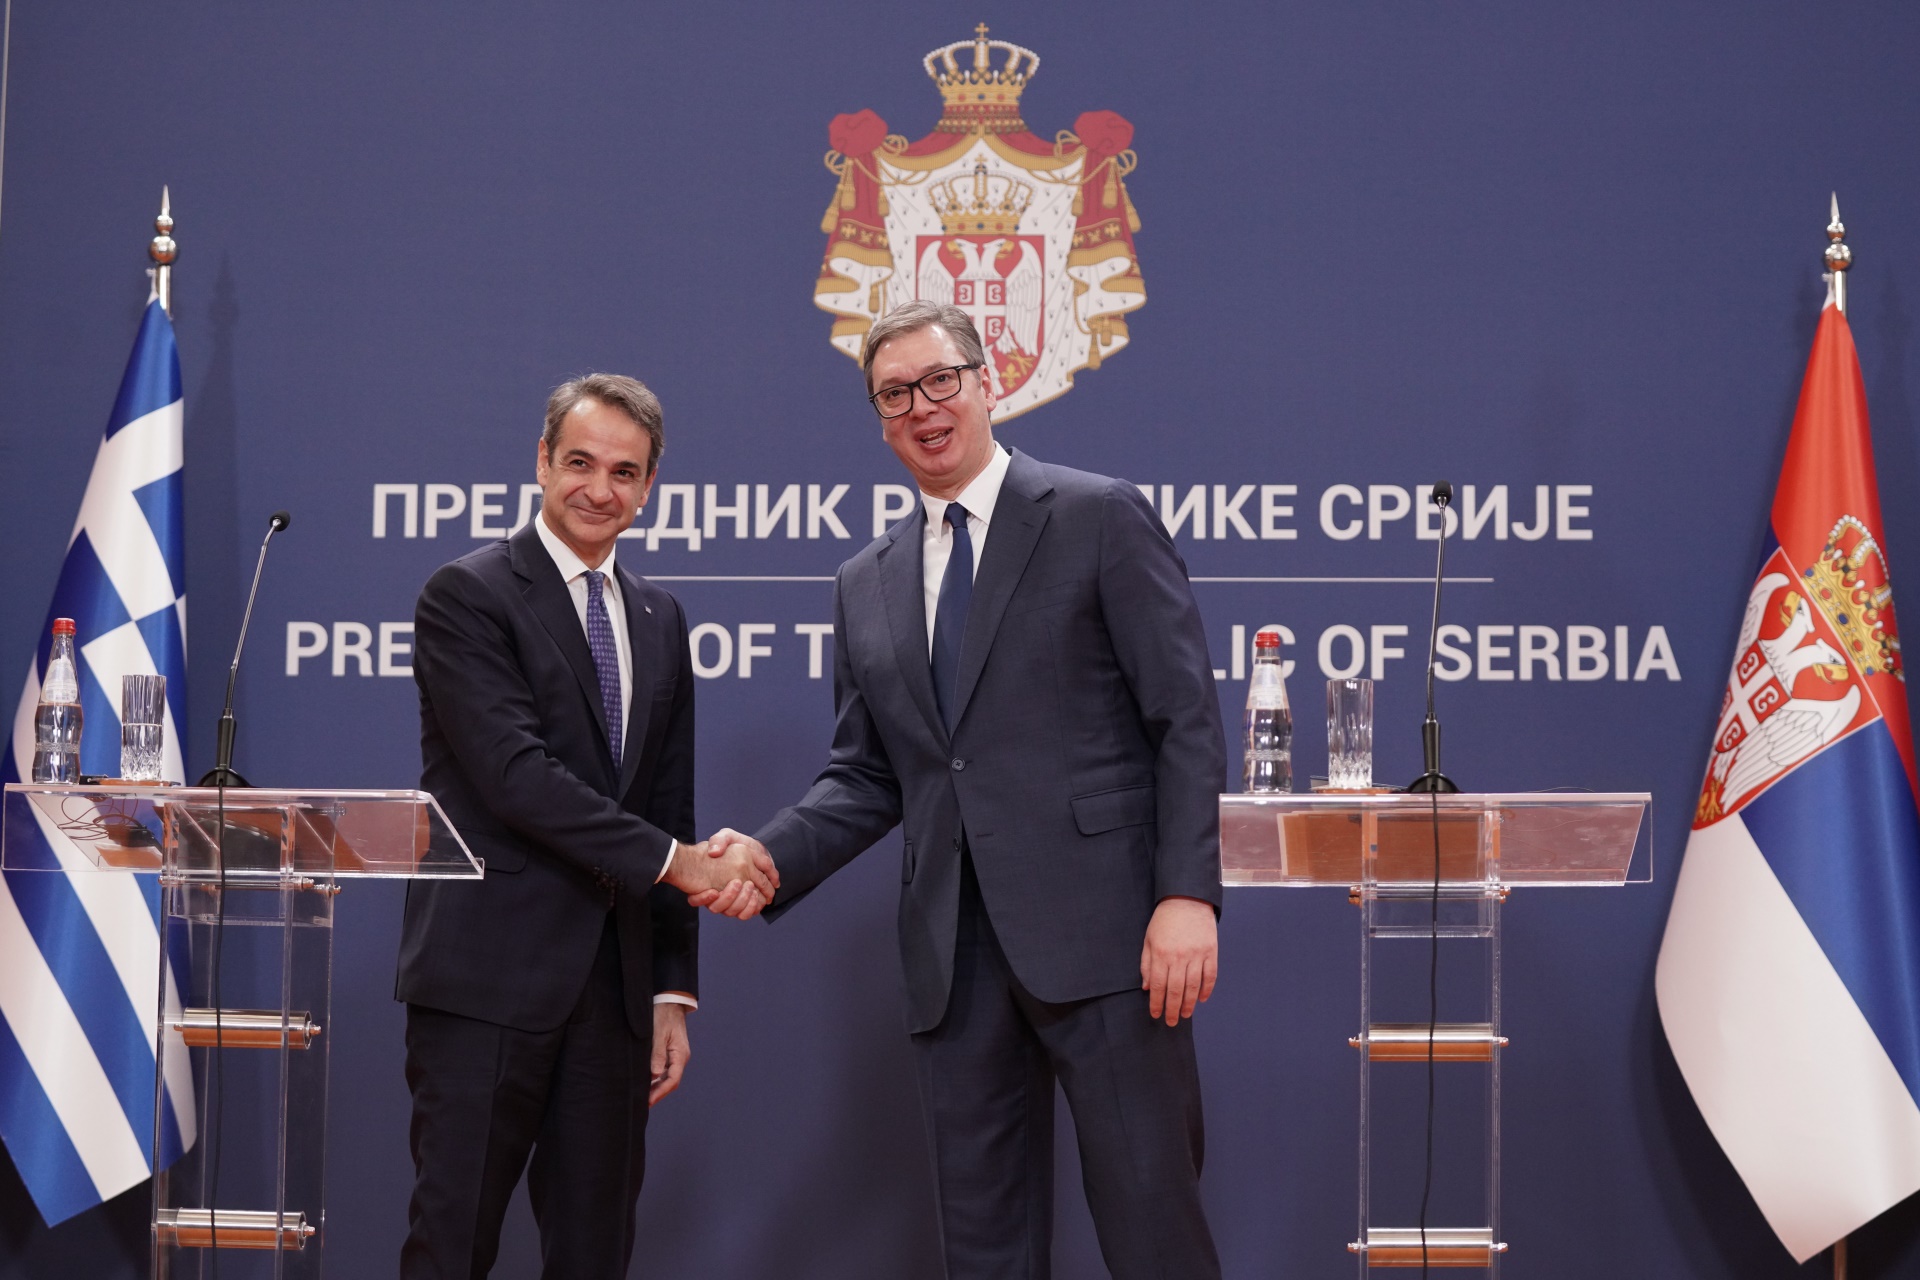 Председник Републике Србије Александар Вучић изјавио је да су Србија и Грчка увек подржавале територијални интегритет једна другој, као и да верује да ће тако бити и у будућности.